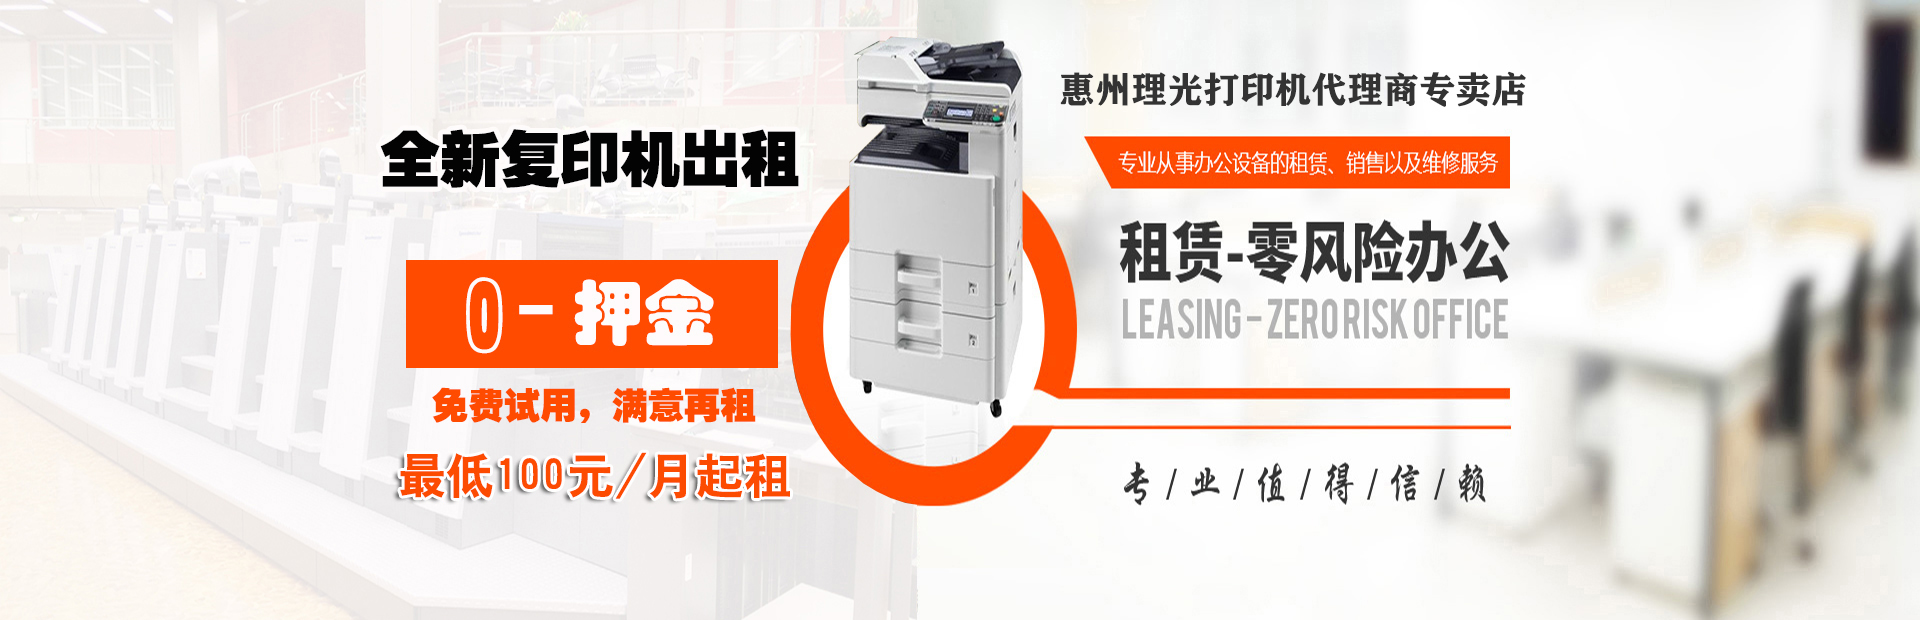 惠州理光打印机